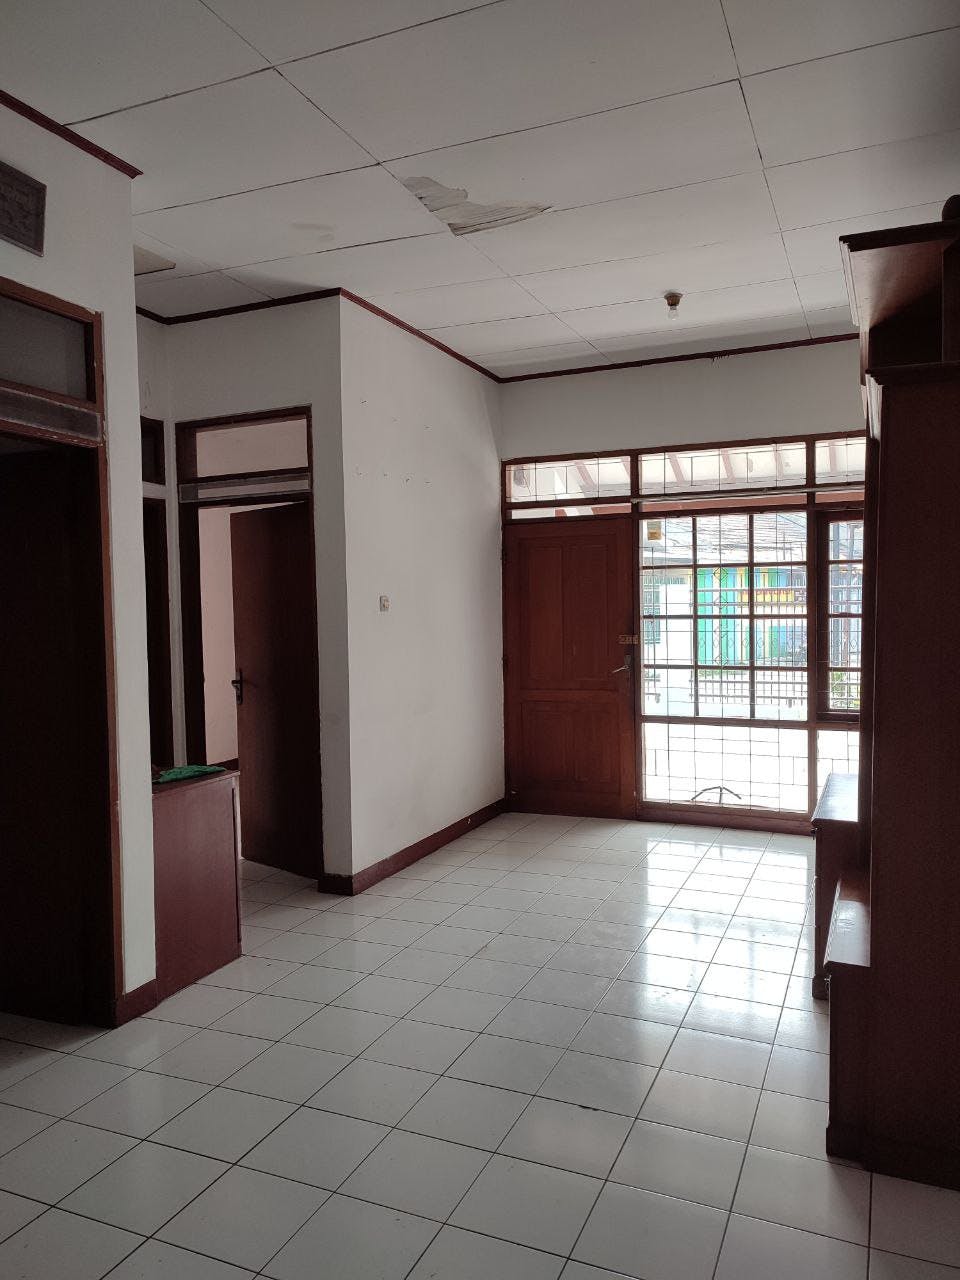 Rumah 1 Lantai Siap Huni Taman Kopo Indah TKI 2, Bandung